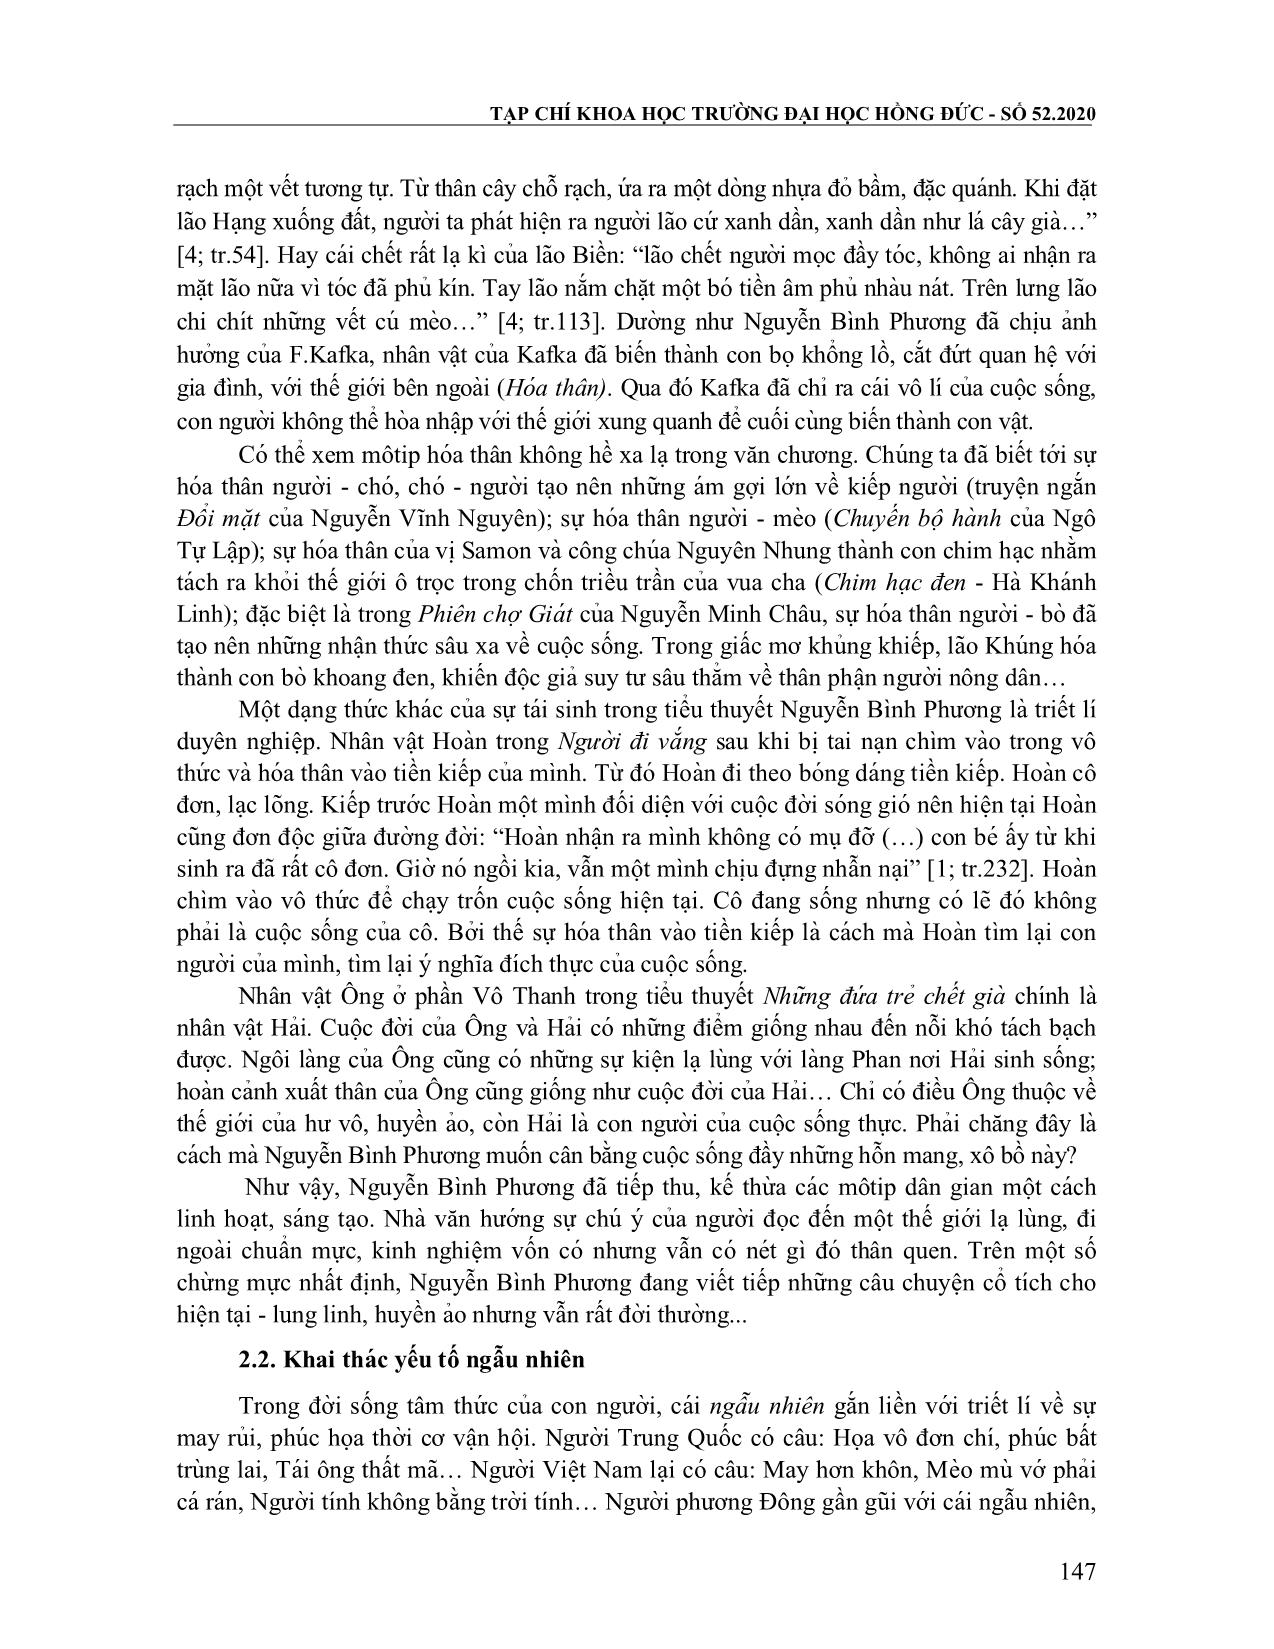 Phương thức huyền thoại hóa trong tổ chức cốt truyện của tiểu thuyết Nuyễn Bình Phương trang 4